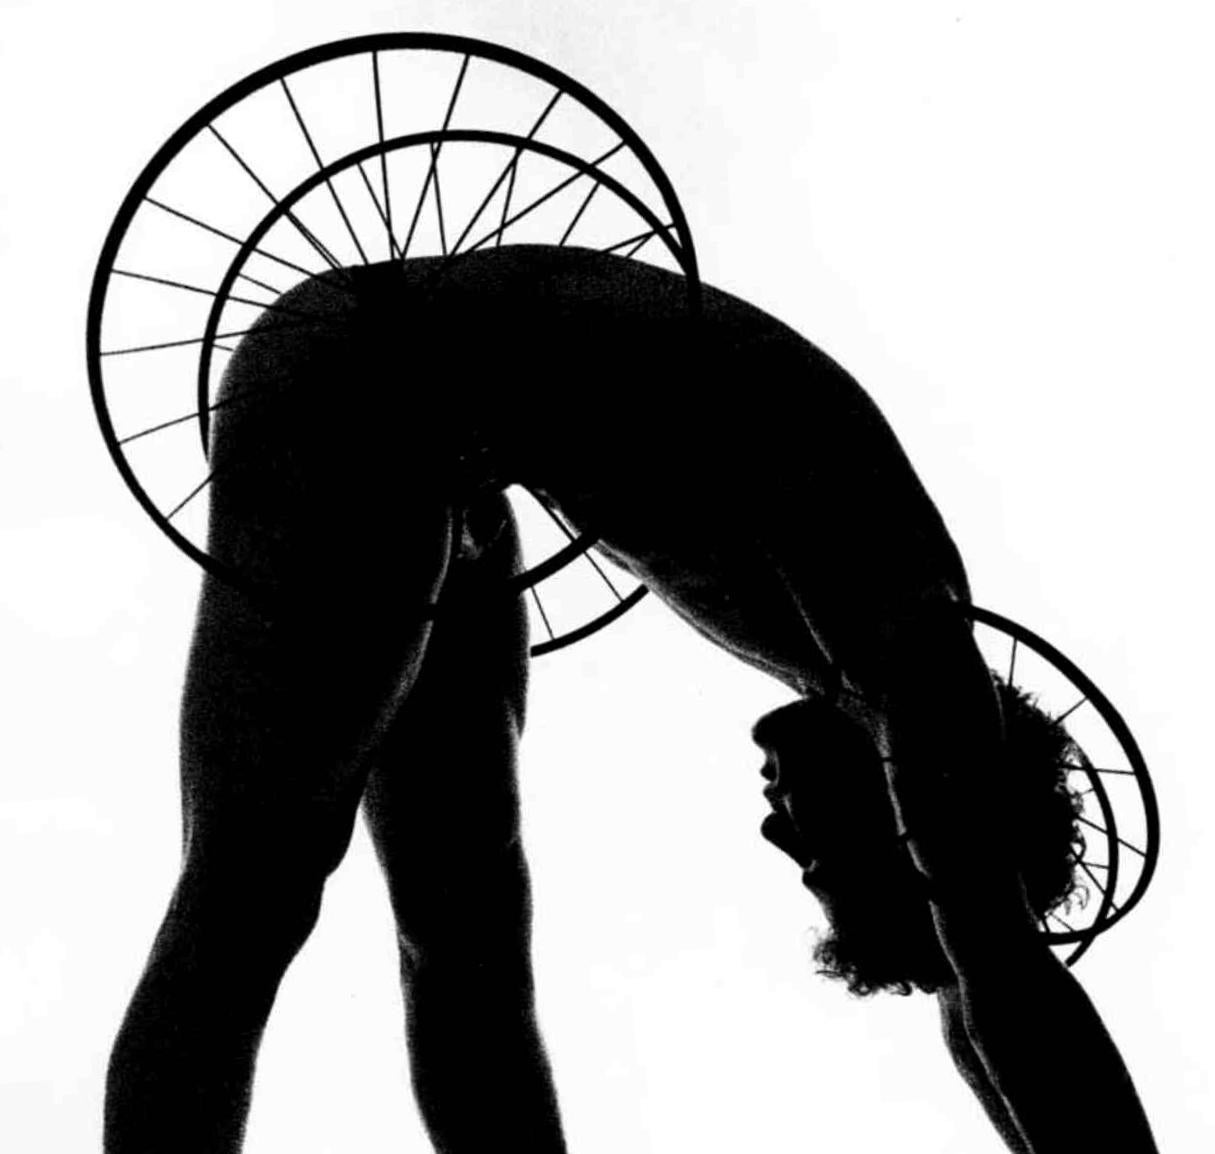 Dance Dancer Choreographer Louis Falco 'Timewright' Kostüm von Robert Indiana, signiert – Photograph von Jack Mitchell